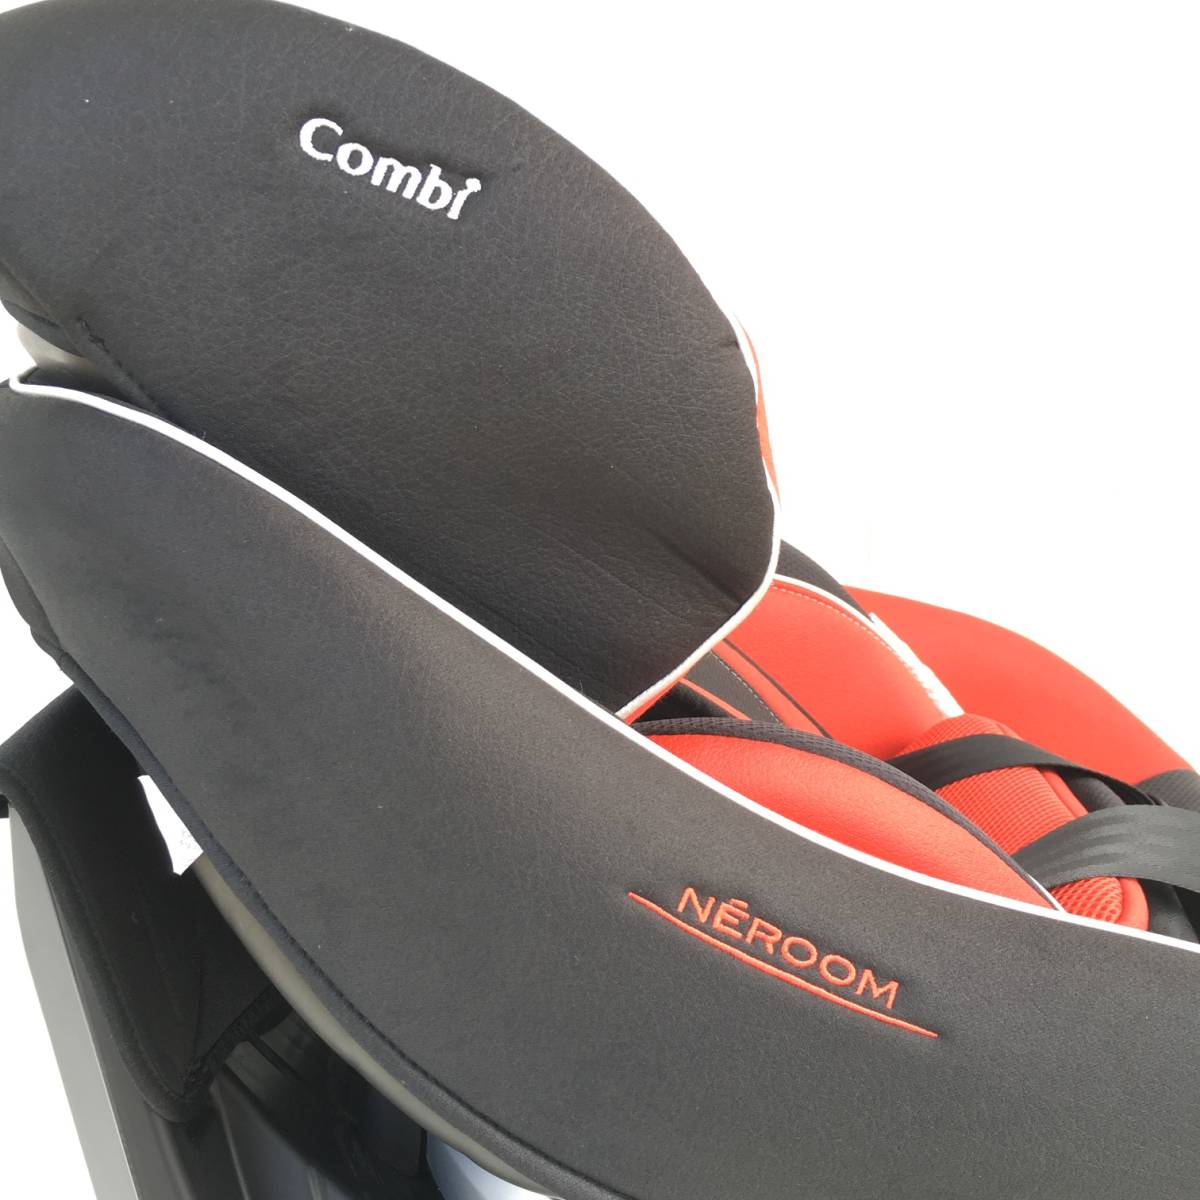 T2280*COMBI NEROOM ISOFIX детское кресло * красный / черный CC-UID комбинированный 